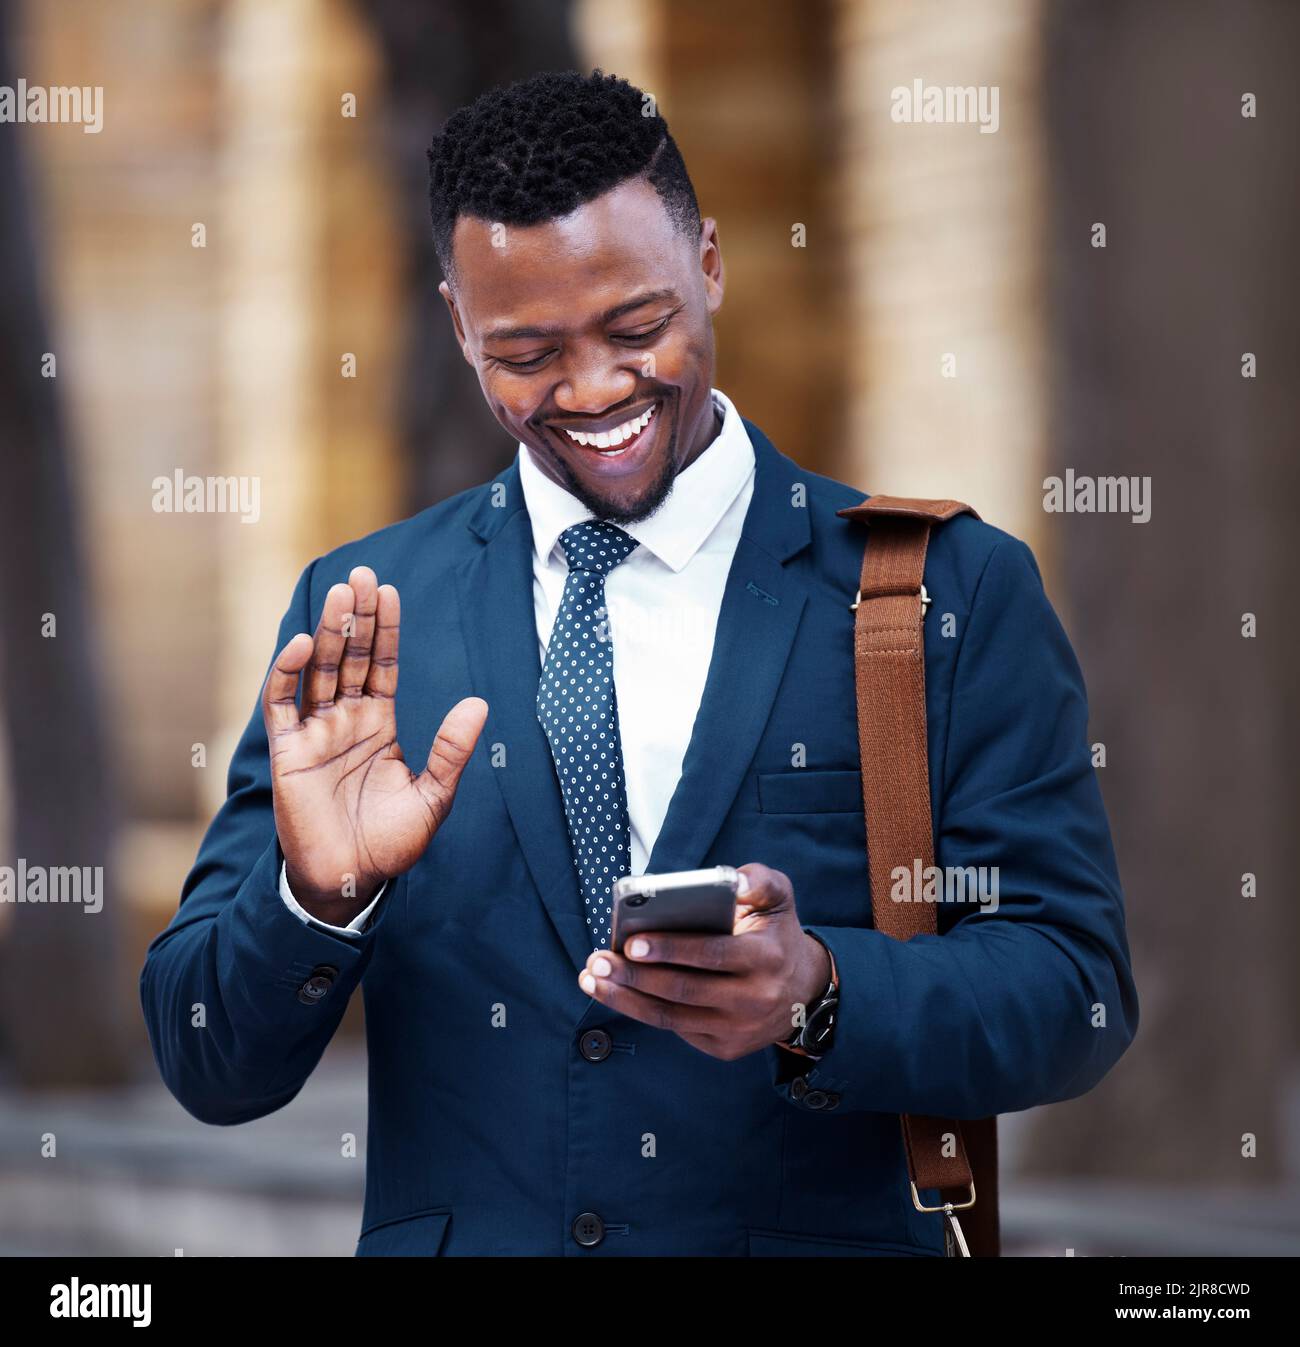 Videochiamata di un giovane uomo d'affari africano su smartphone, fuori dall'ufficio aziendale e comunicazione in città. Ritratto dell'imprenditore sul sociale Foto Stock